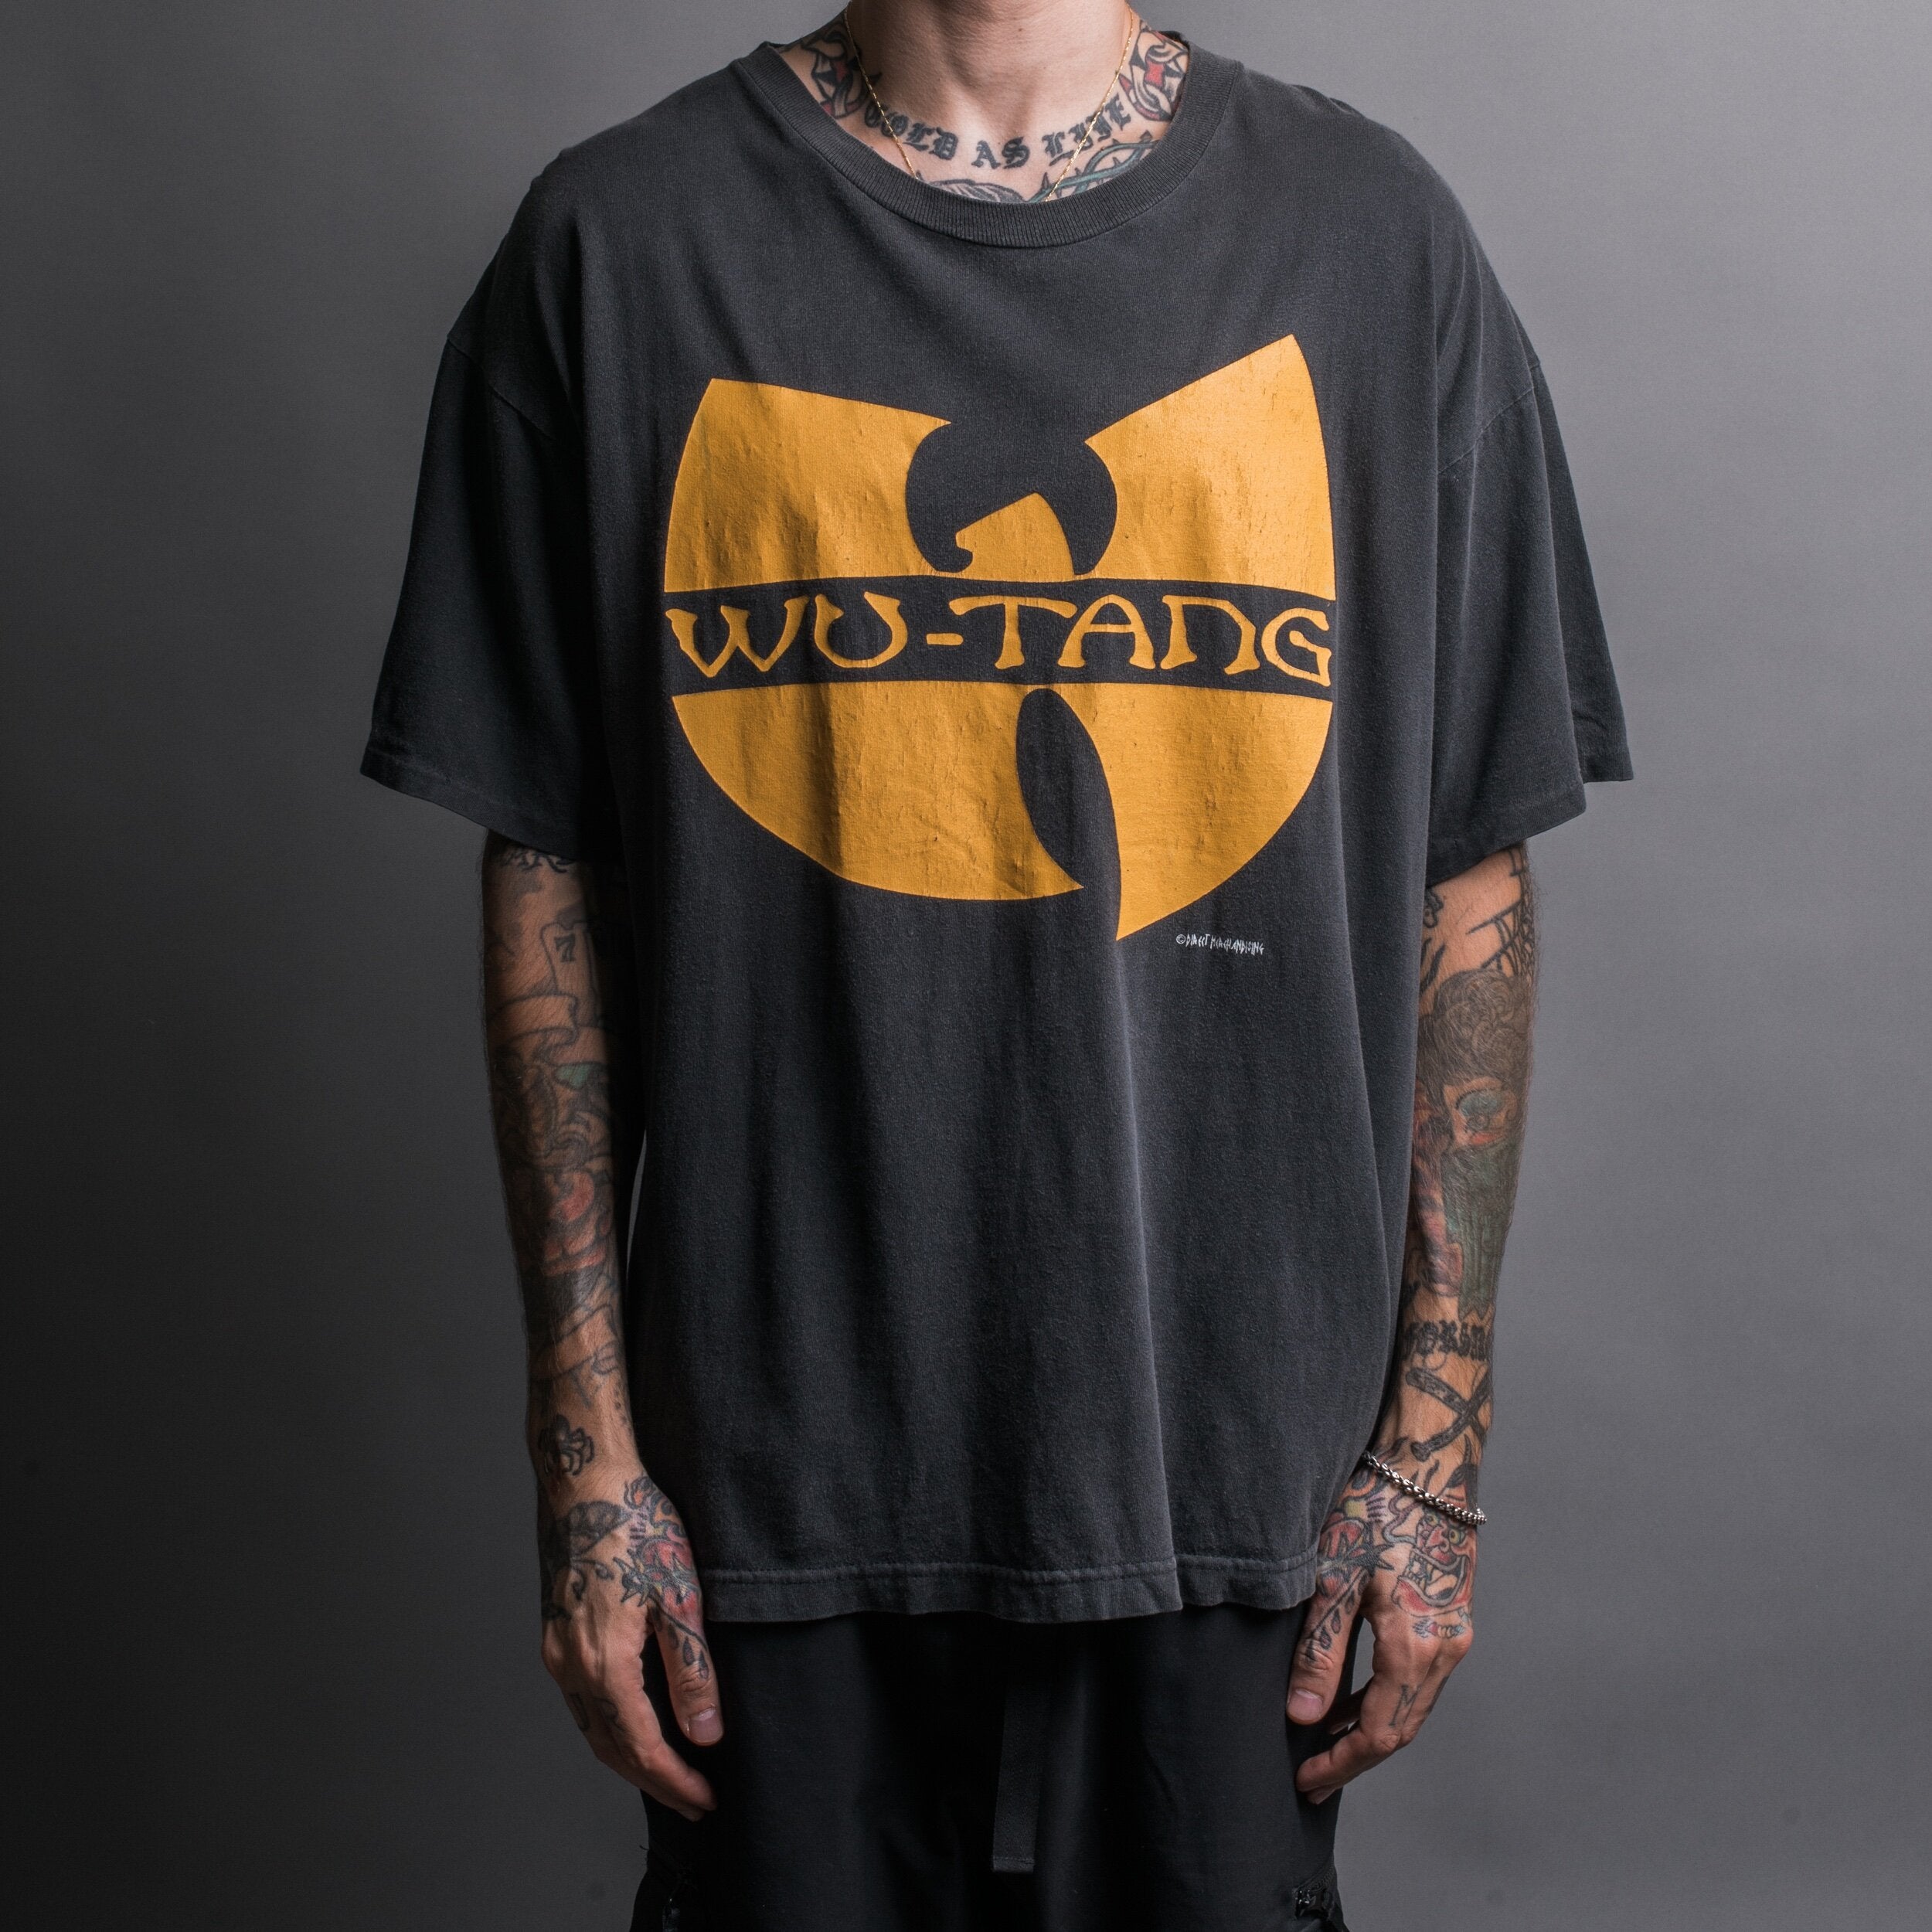 Wu-Tang Clan ウータンクラン METHOD MAN tシャツ - Tシャツ ...